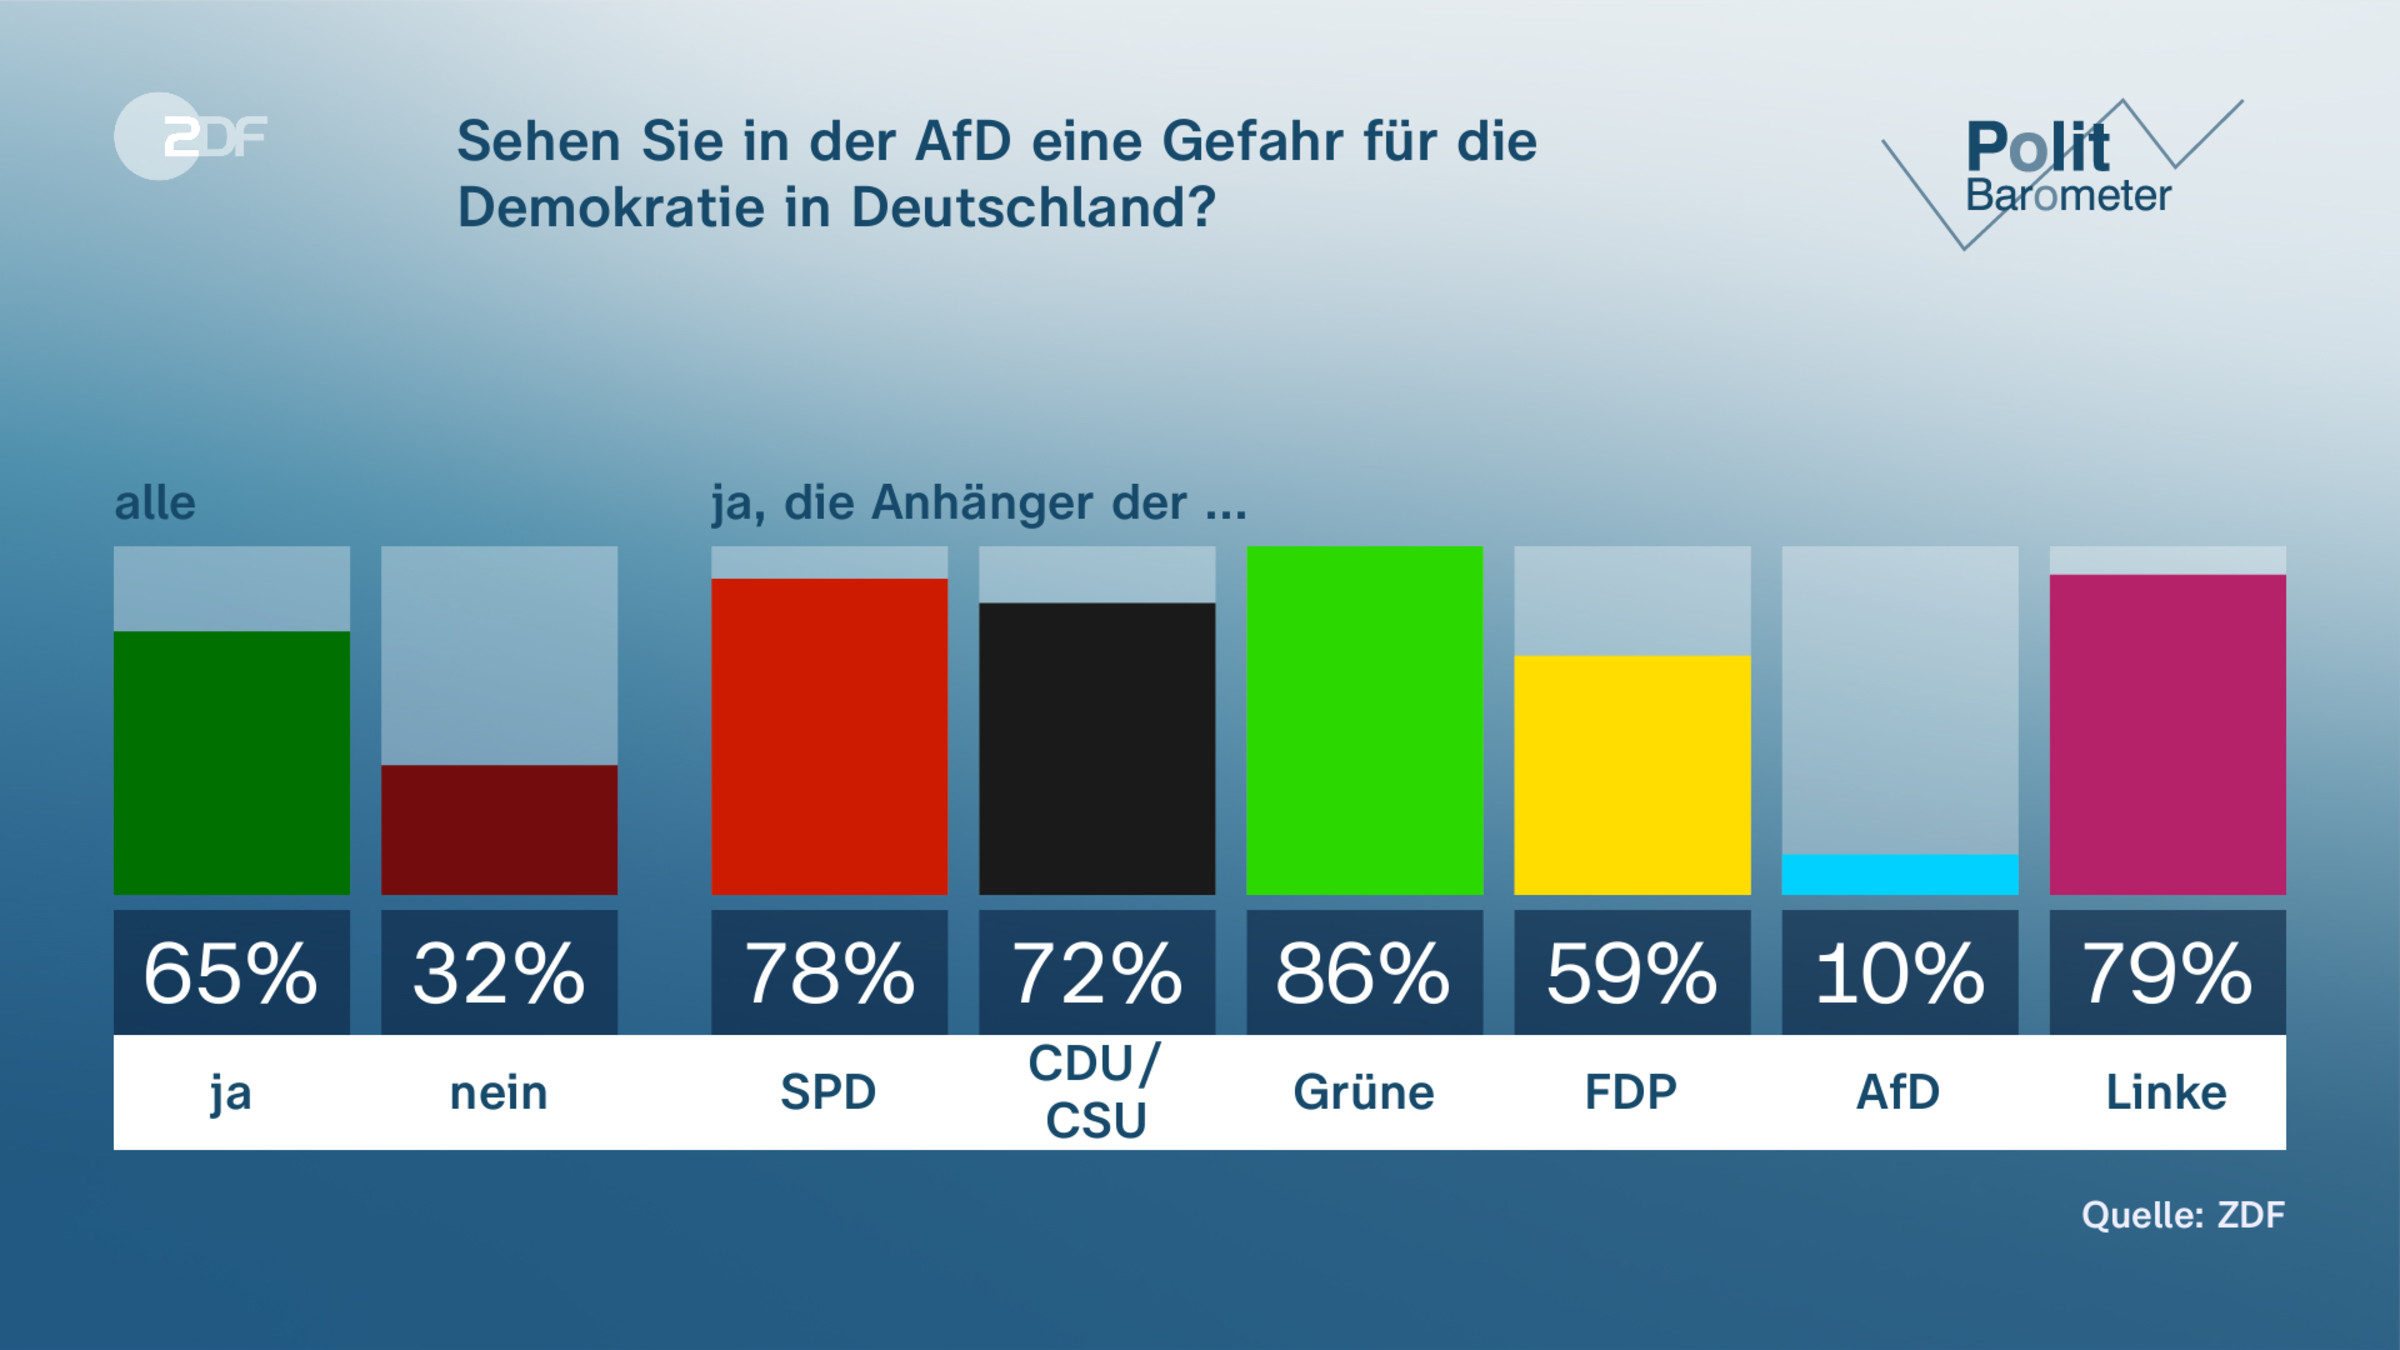 Sehen Sie in der AfD eine Gefahr für die Demokratie in Deutschland?